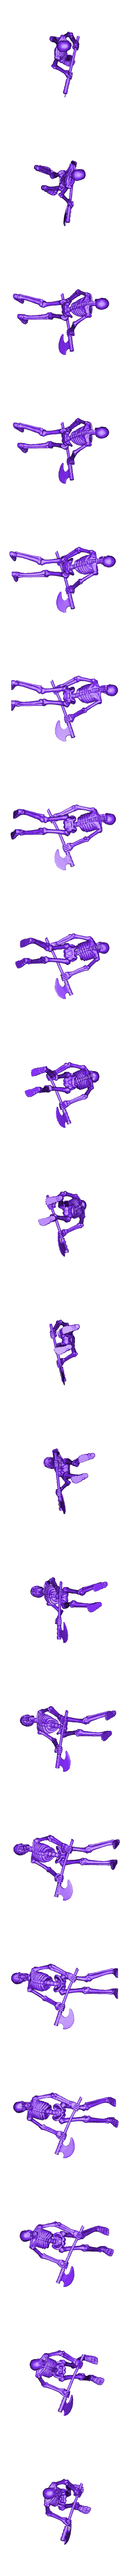 skeletons_5_32mm.stl Archivo STL Set de 7 esqueletos de guerreros (+ versión precompatible) (18) - Oscuridad Caos Medieval Age of Sigmar Fantasy Warhammer・Objeto imprimible en 3D para descargar, Hartolia-Miniatures